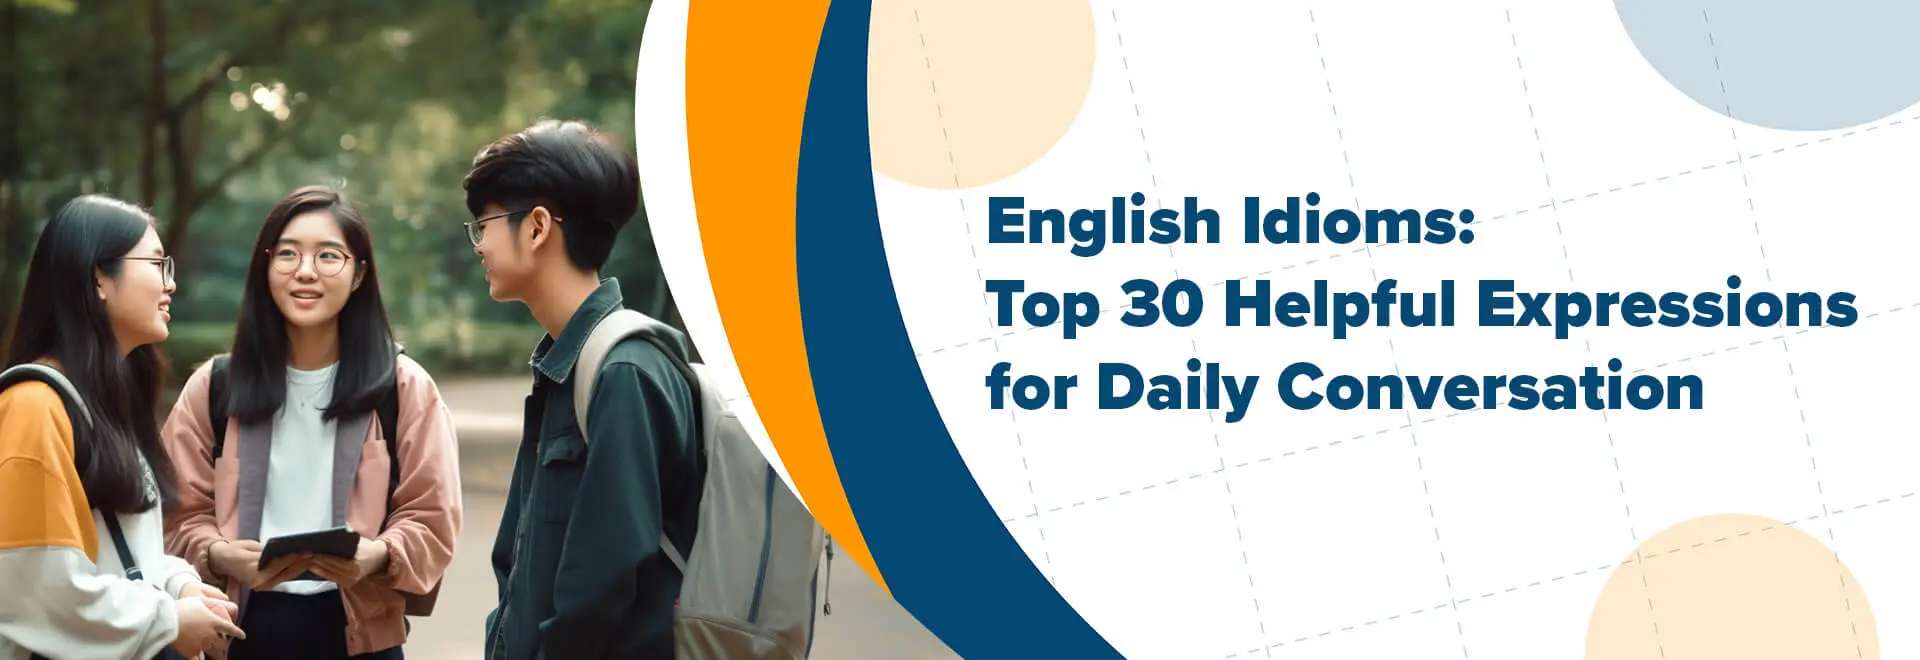 สำนวนในภาษาอังกฤษ: 30 สำนวนยอดนิยมสำหรับการสนทนาในชีวิตประจำวัน